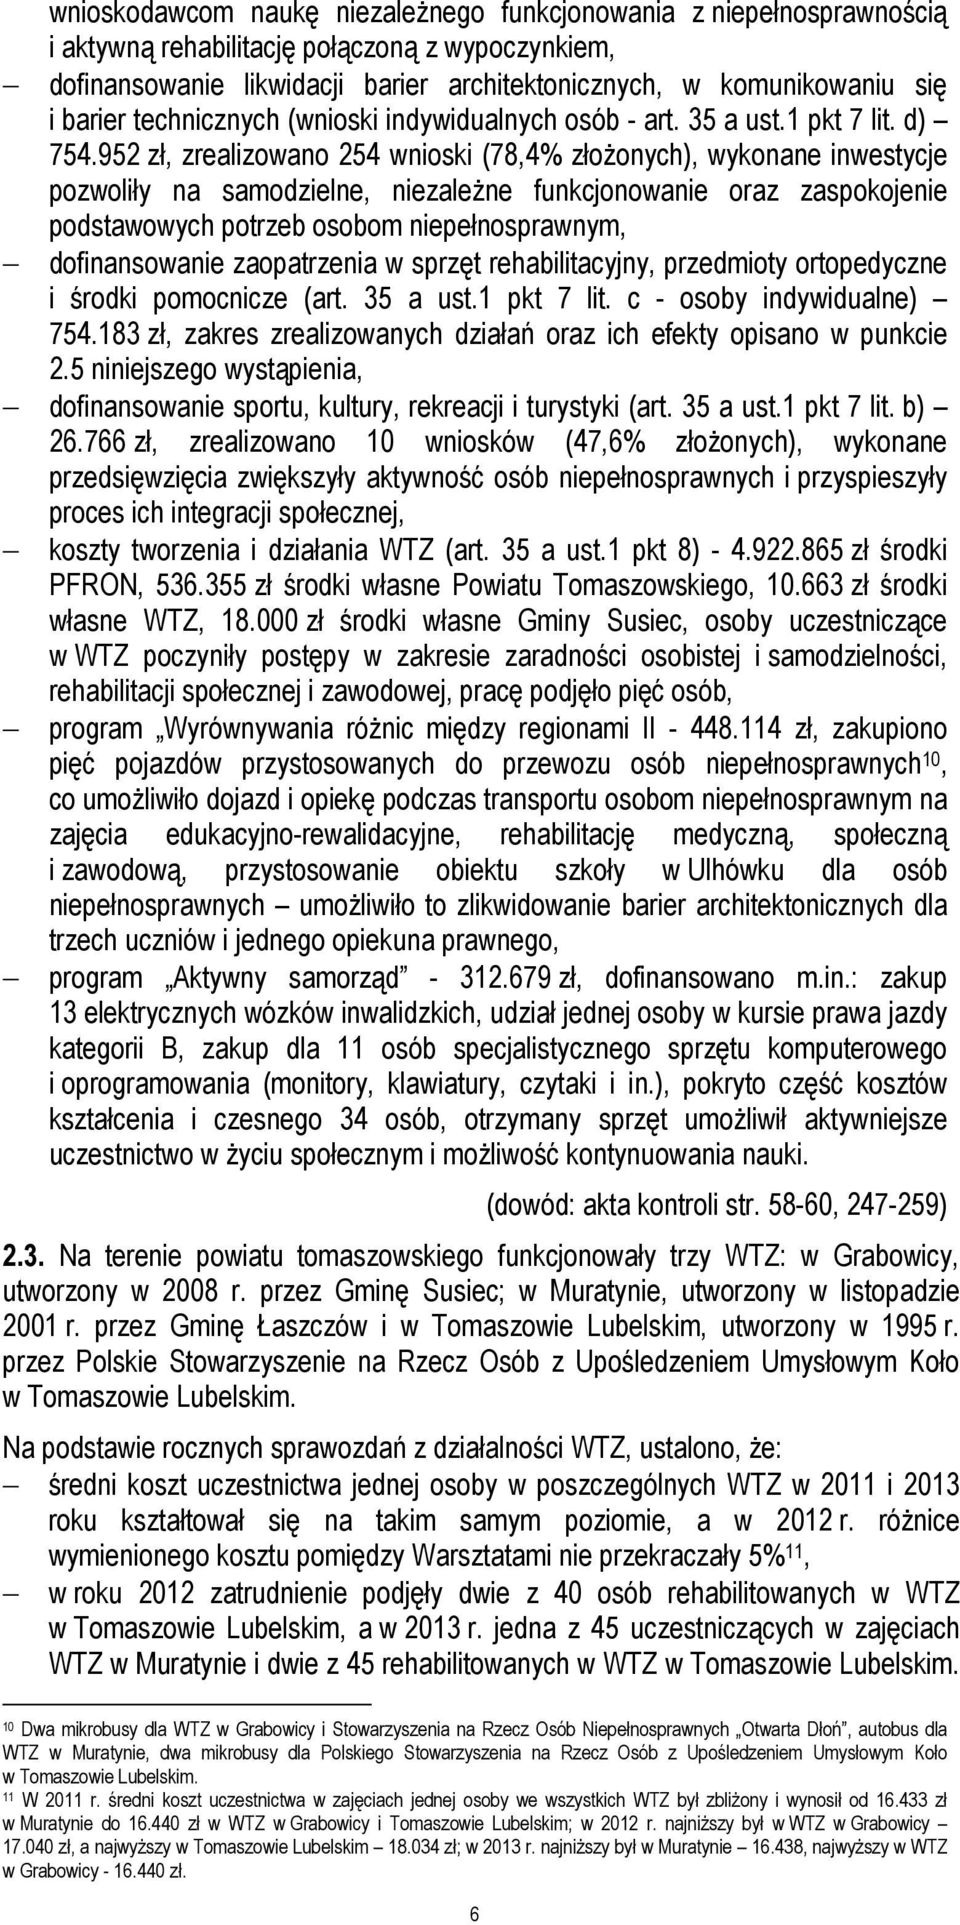 952 zł, zrealizowano 254 wnioski (78,4% złożonych), wykonane inwestycje pozwoliły na samodzielne, niezależne funkcjonowanie oraz zaspokojenie podstawowych potrzeb osobom niepełnosprawnym,